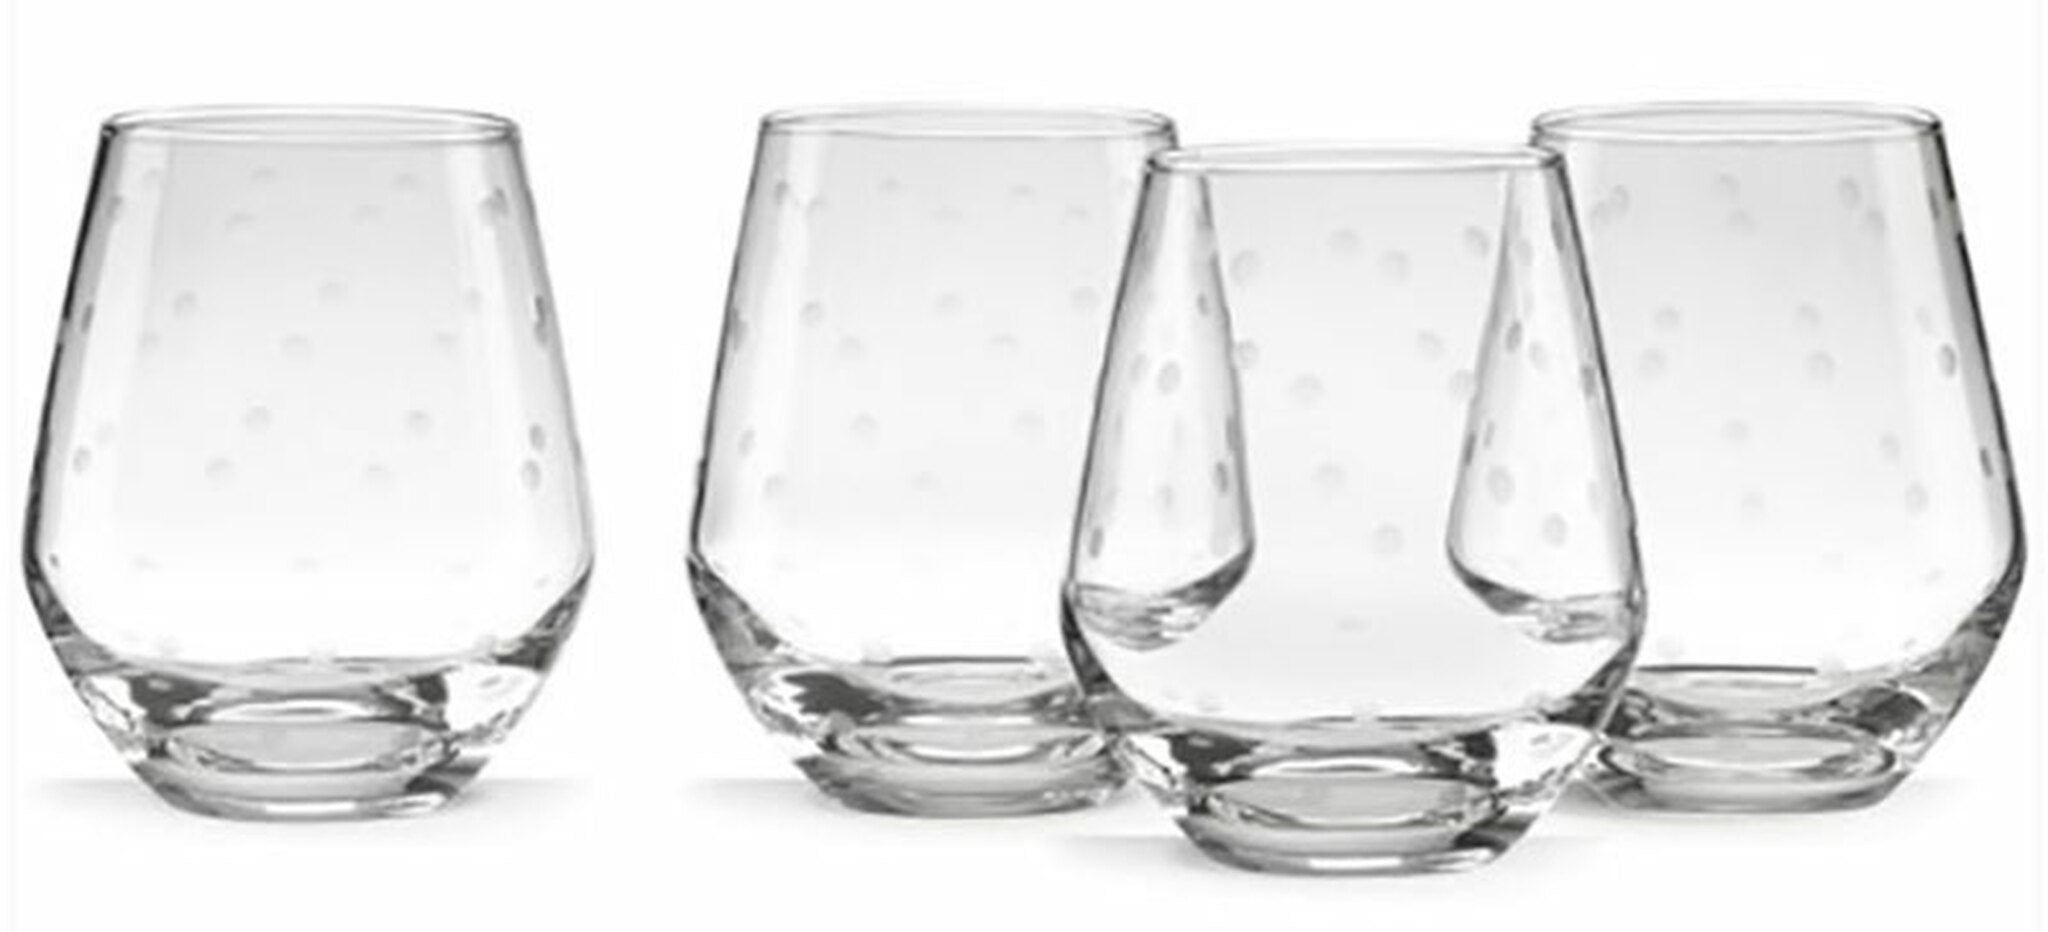 Larabee Dot Stemless Wine Glasses set of 4